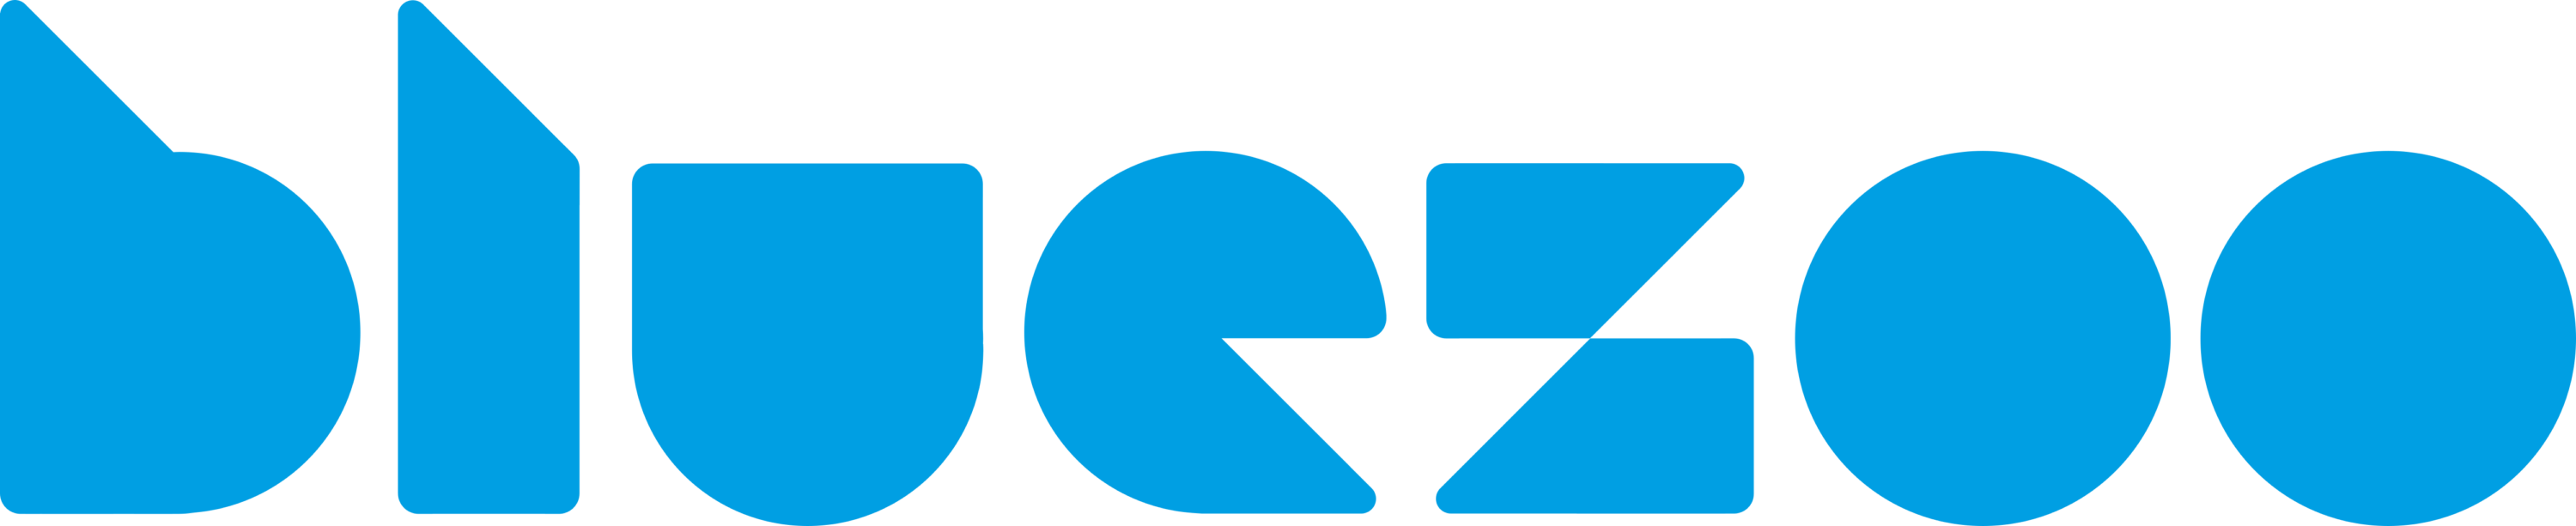 Blue Zoo Animation Production Logo